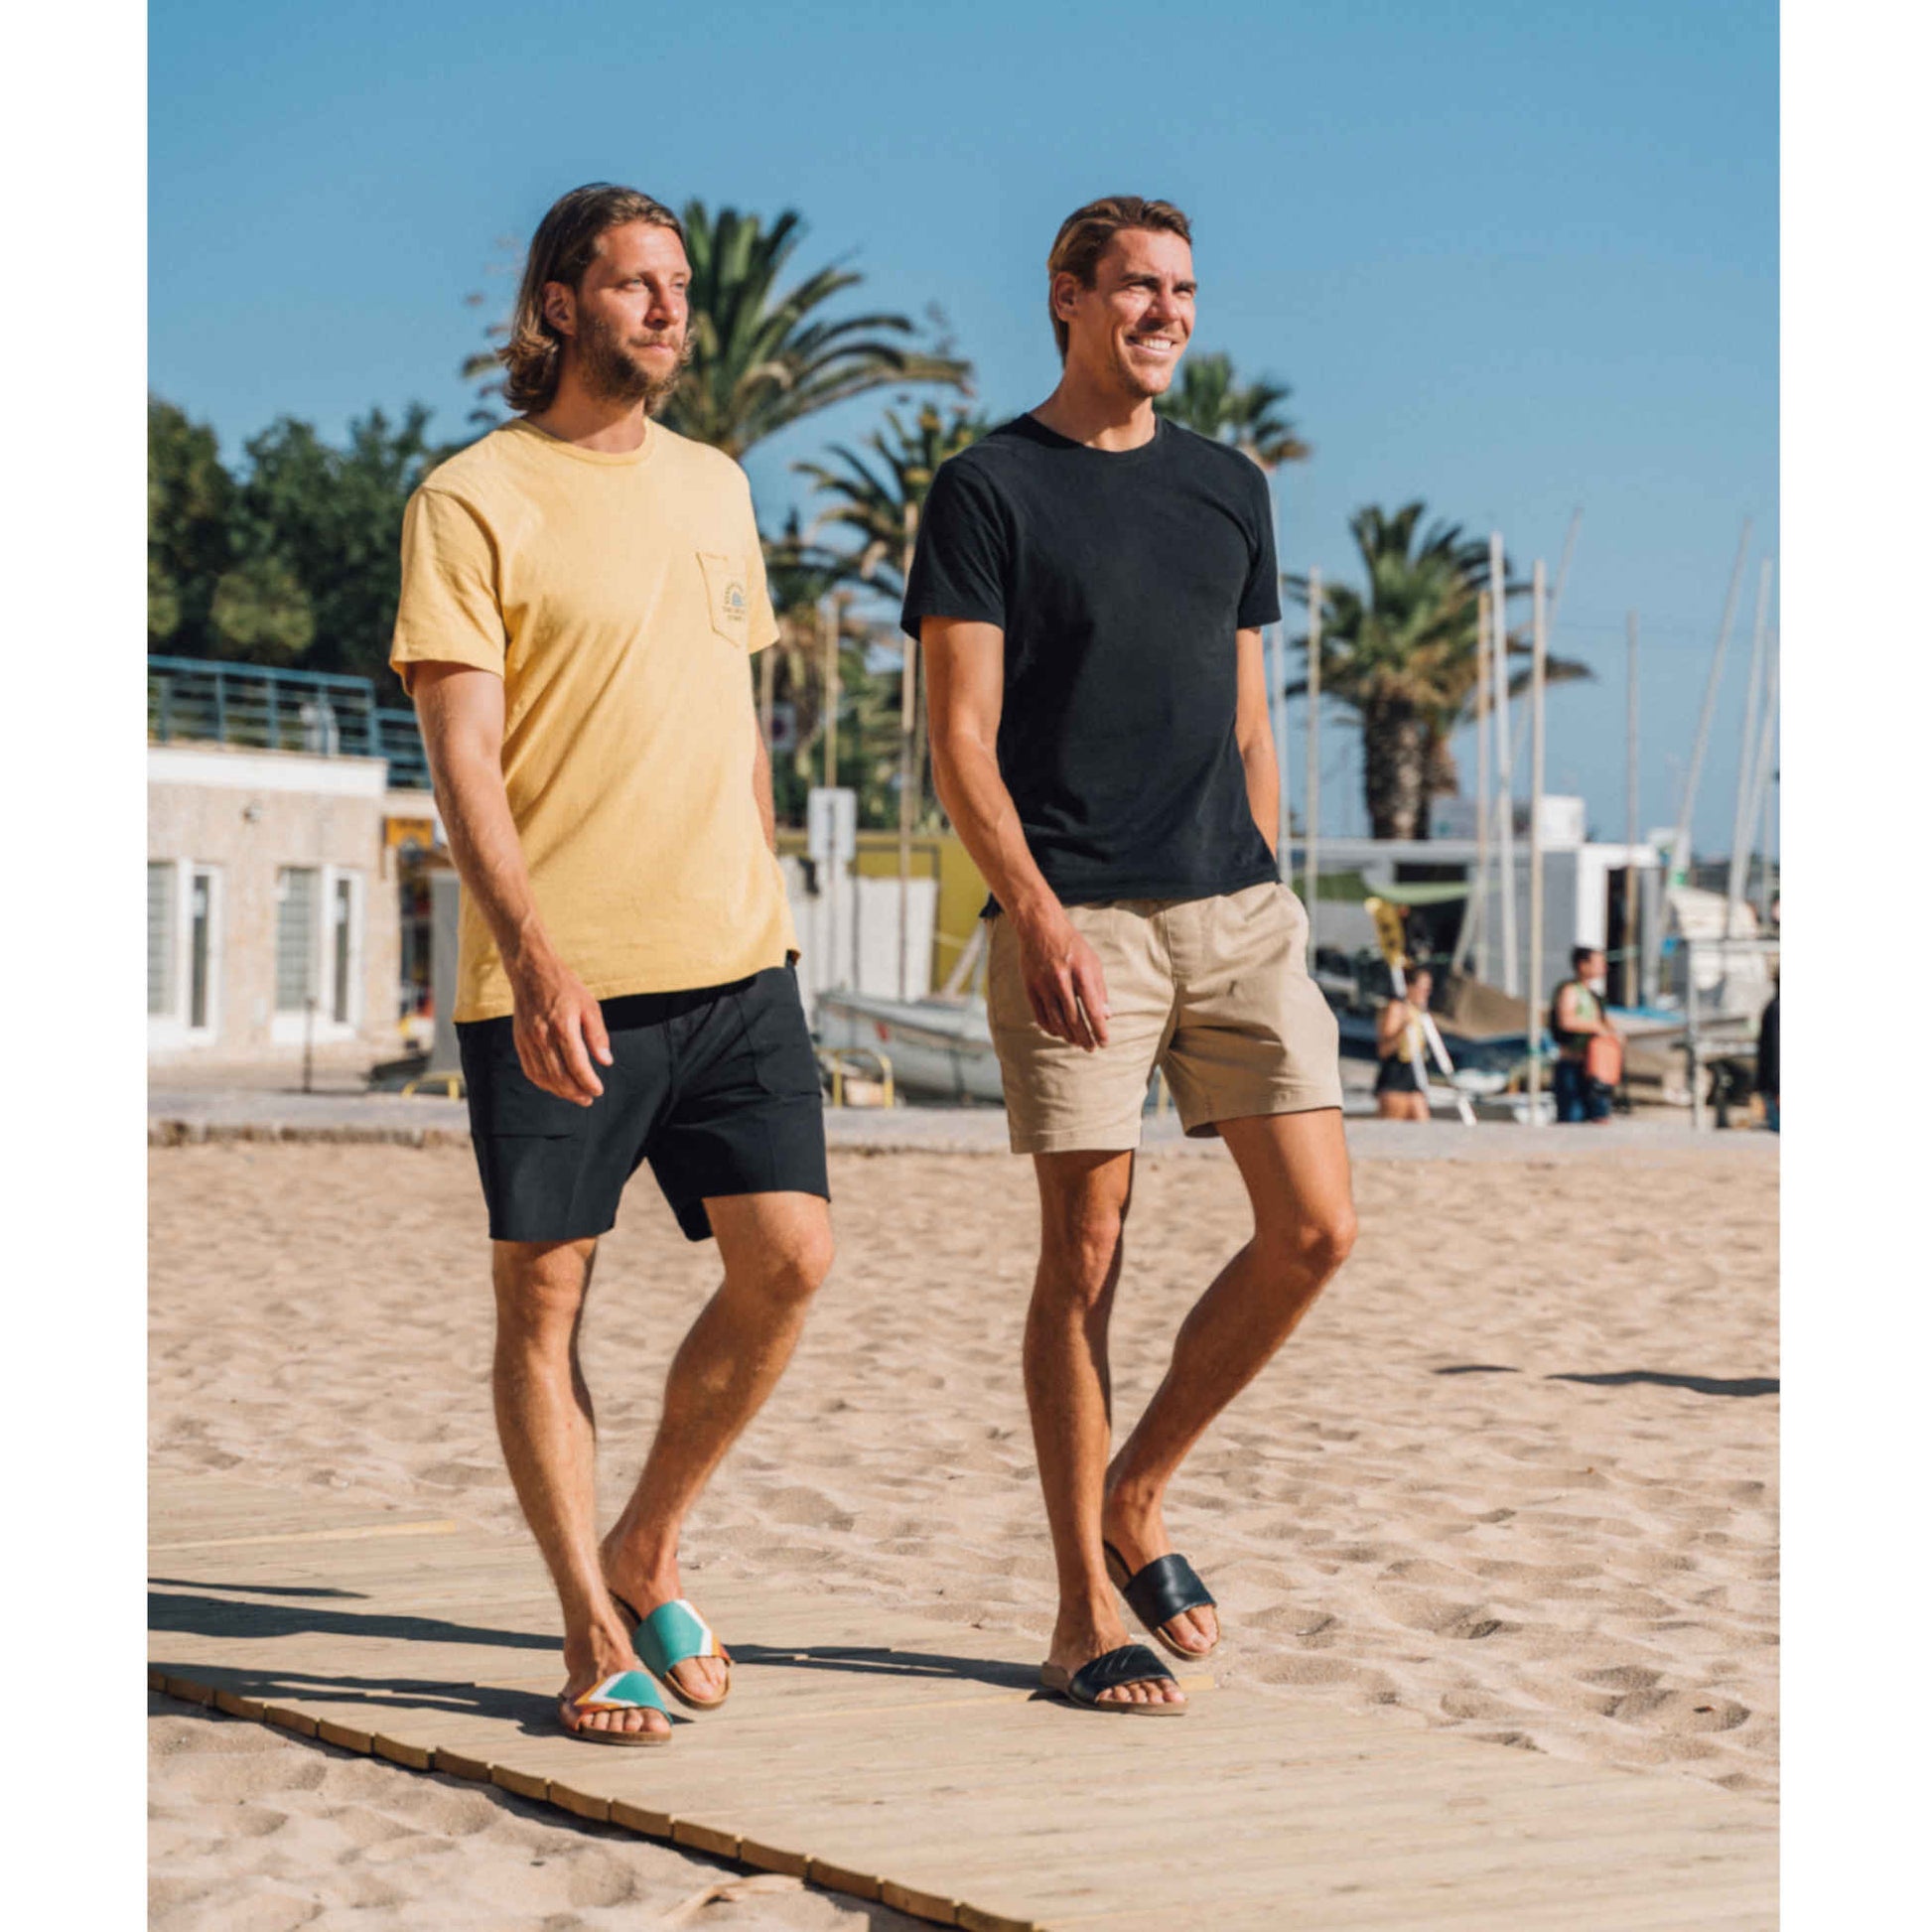 Vegane schwarze Sandalen, Marke Fünve, Modell: YIN, zwei Surferboys in Sandalen am Strand, Marke Fünve